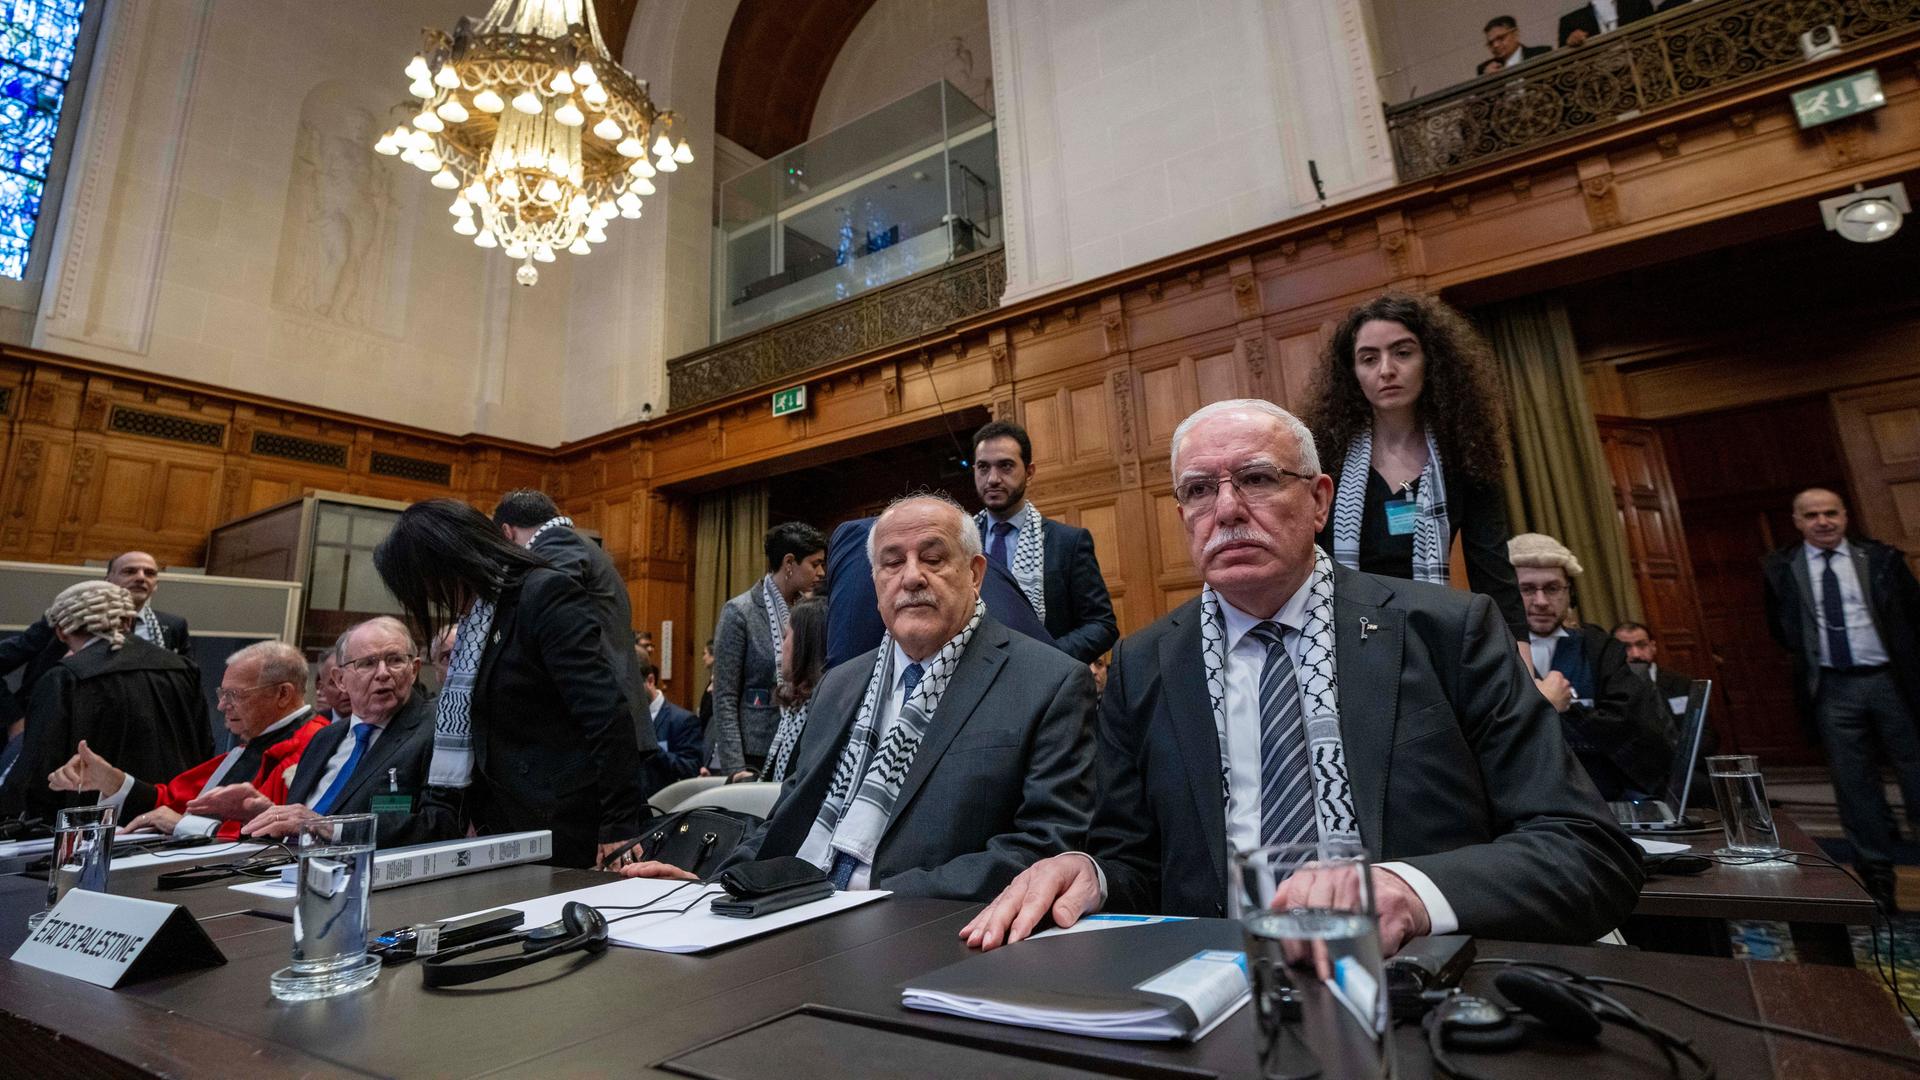 Den Haag: Riyad Al-Maliki (r), Außenminister der Palästinensischen Autonomiebehörde, und Riyad Mansour (2.v.r), Vertreter der Palästinensischen Autonomiebehörde bei den Vereinten Nationen, warten auf die Eröffnung der Anhörung vor dem Obersten Gerichtshof der Vereinten Nationen.